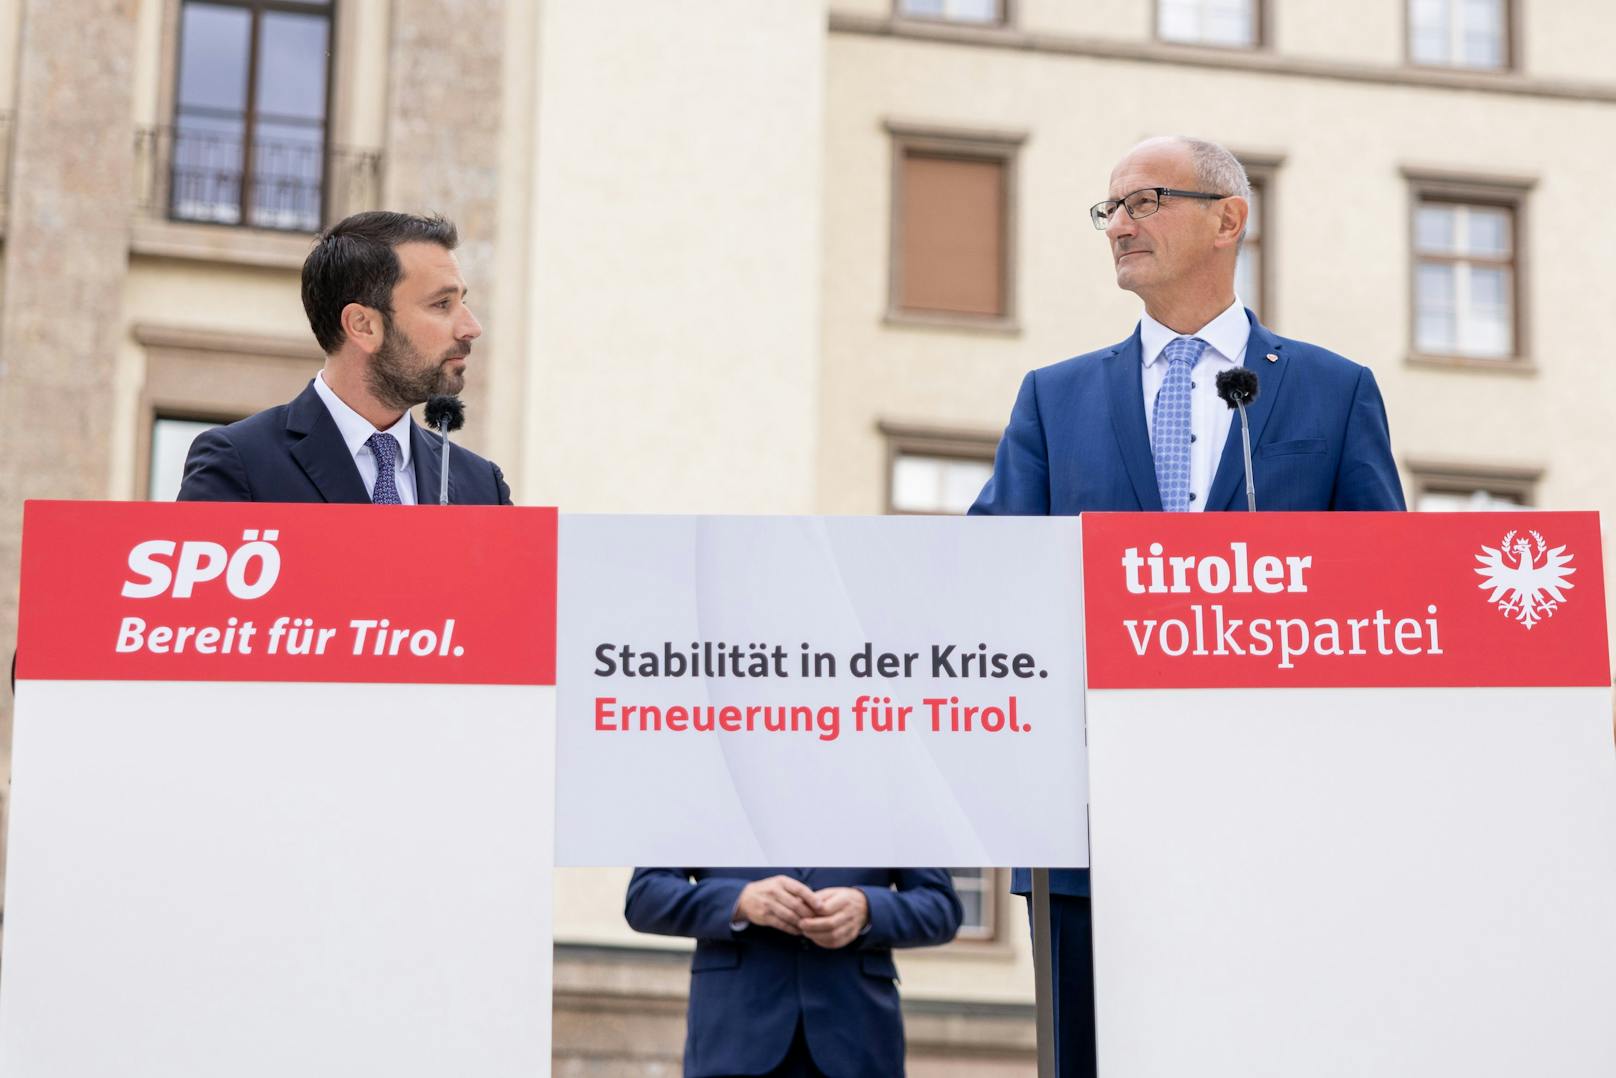 FPÖ ortet bei Volkspartei "pure Verhöhnung der Tiroler"